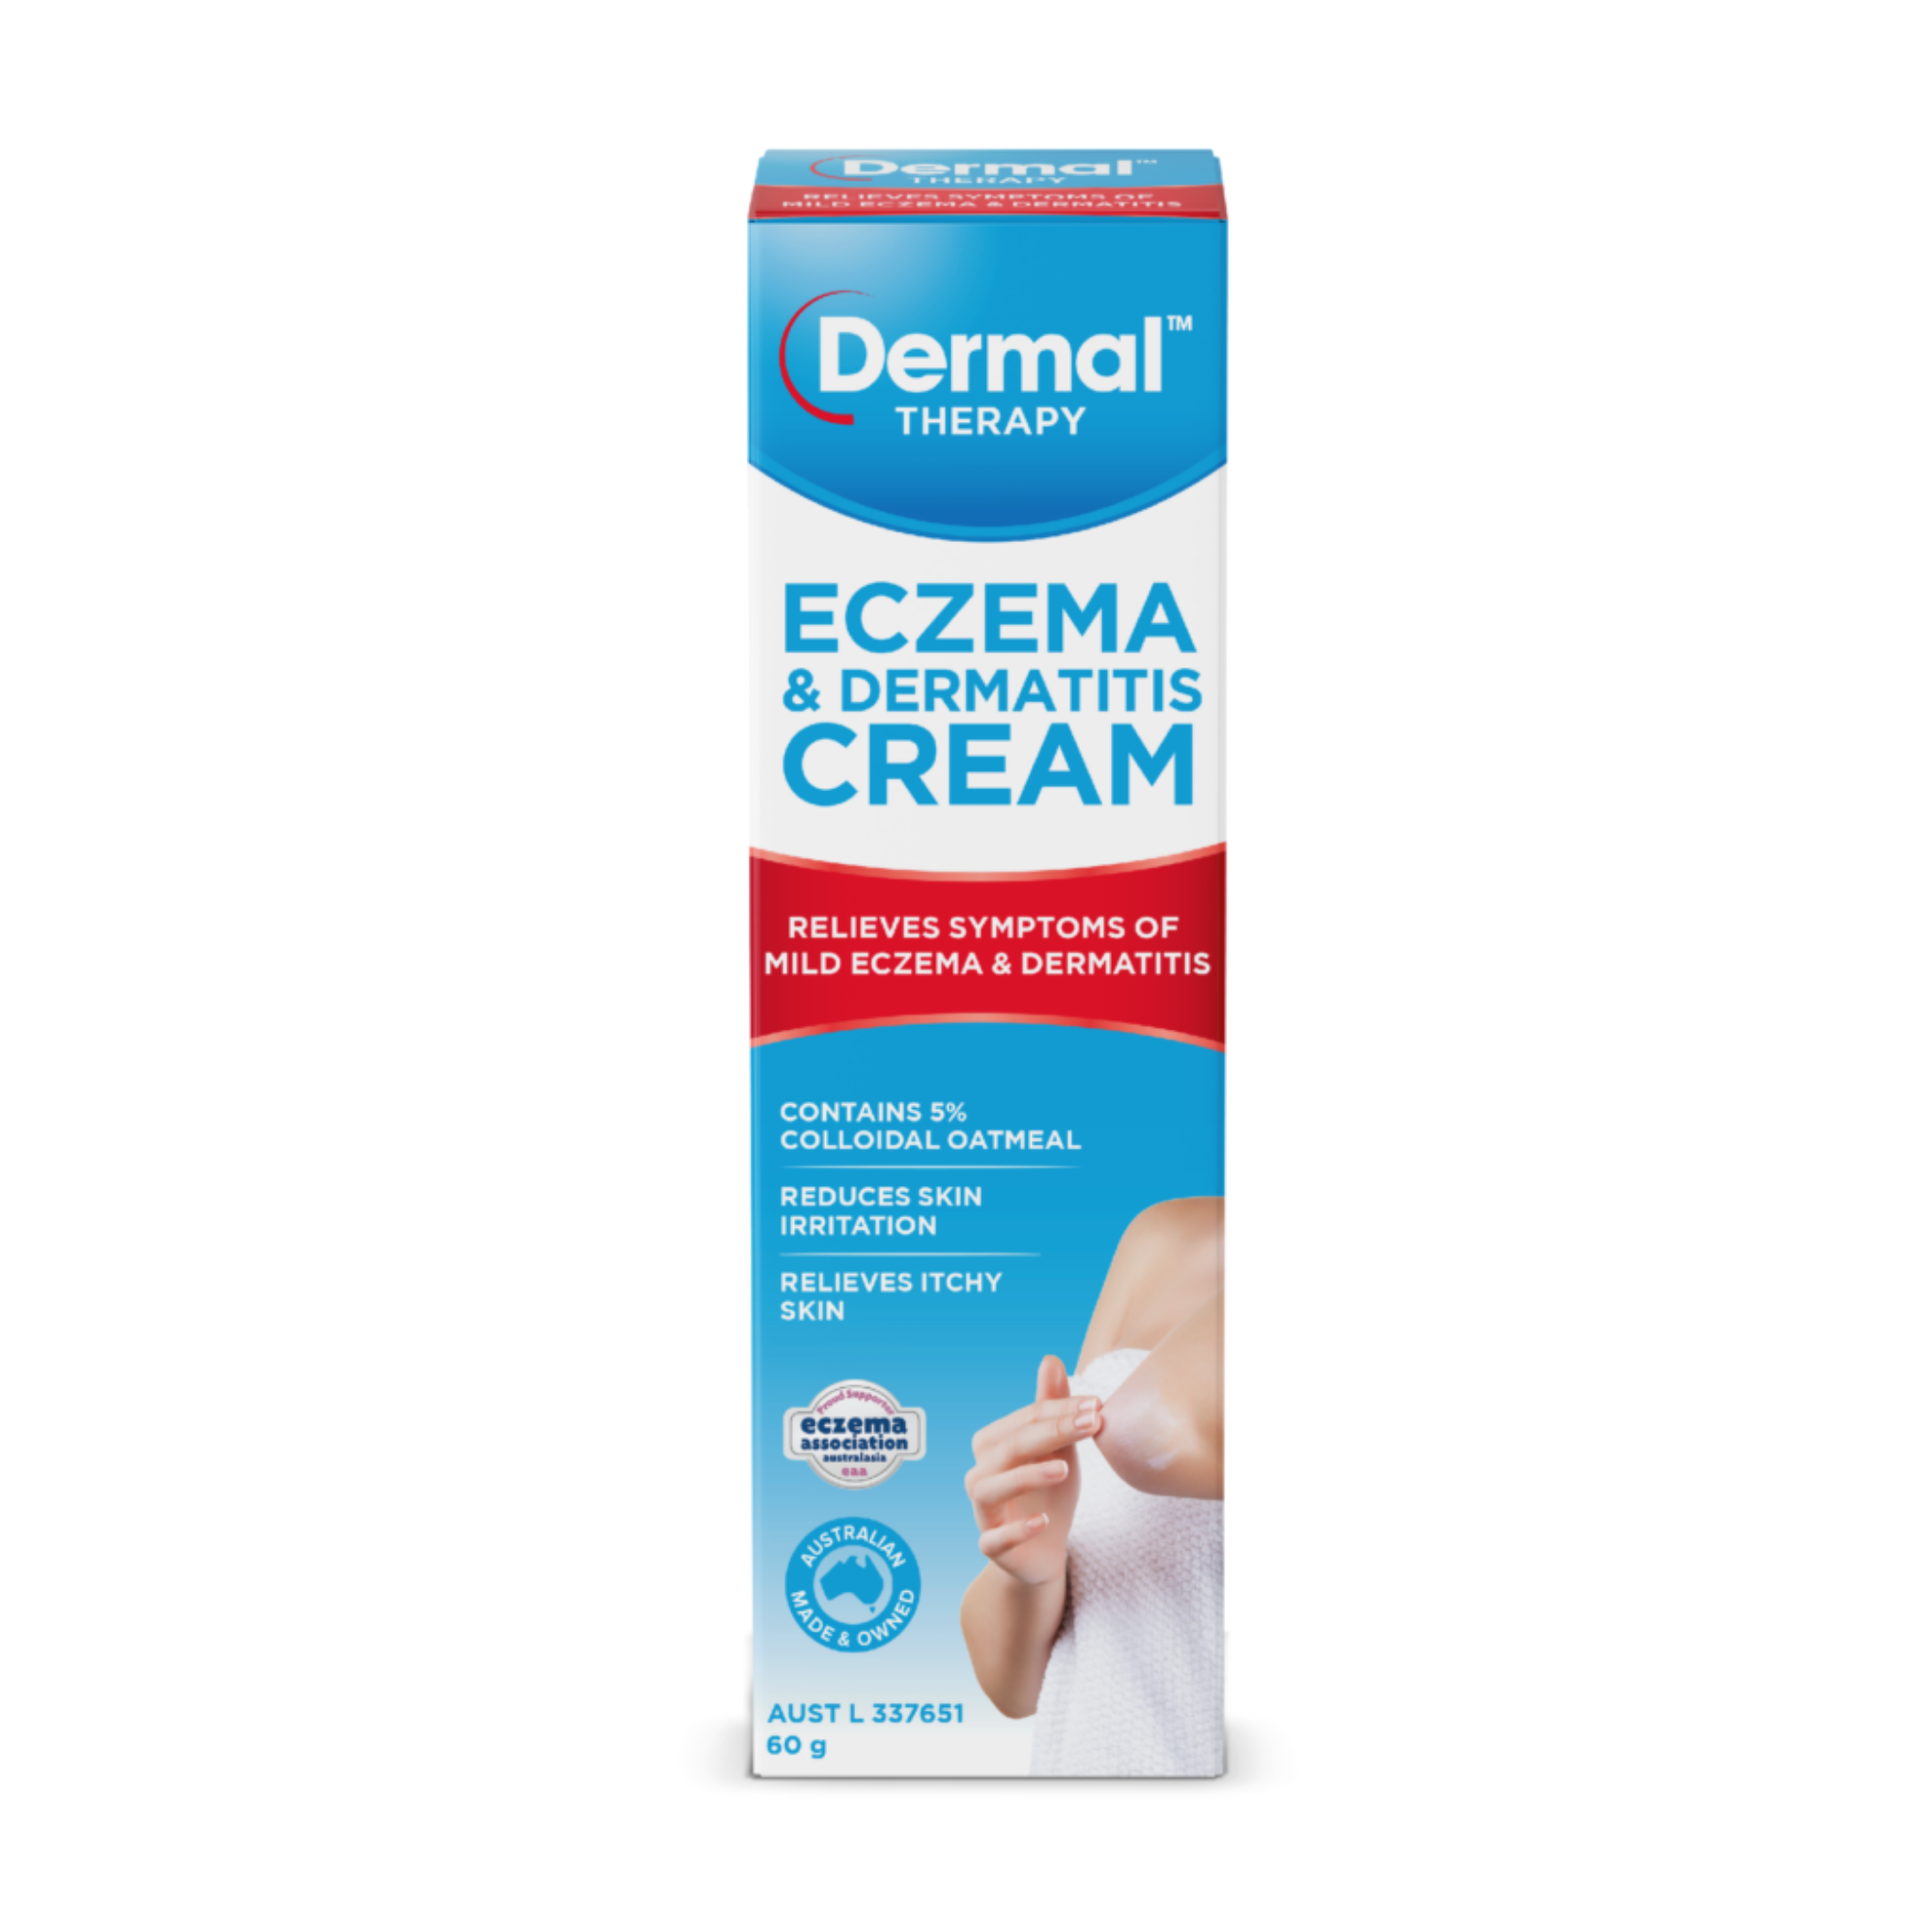 Dermal Therapy Eczema & Dermatis Cream 60g